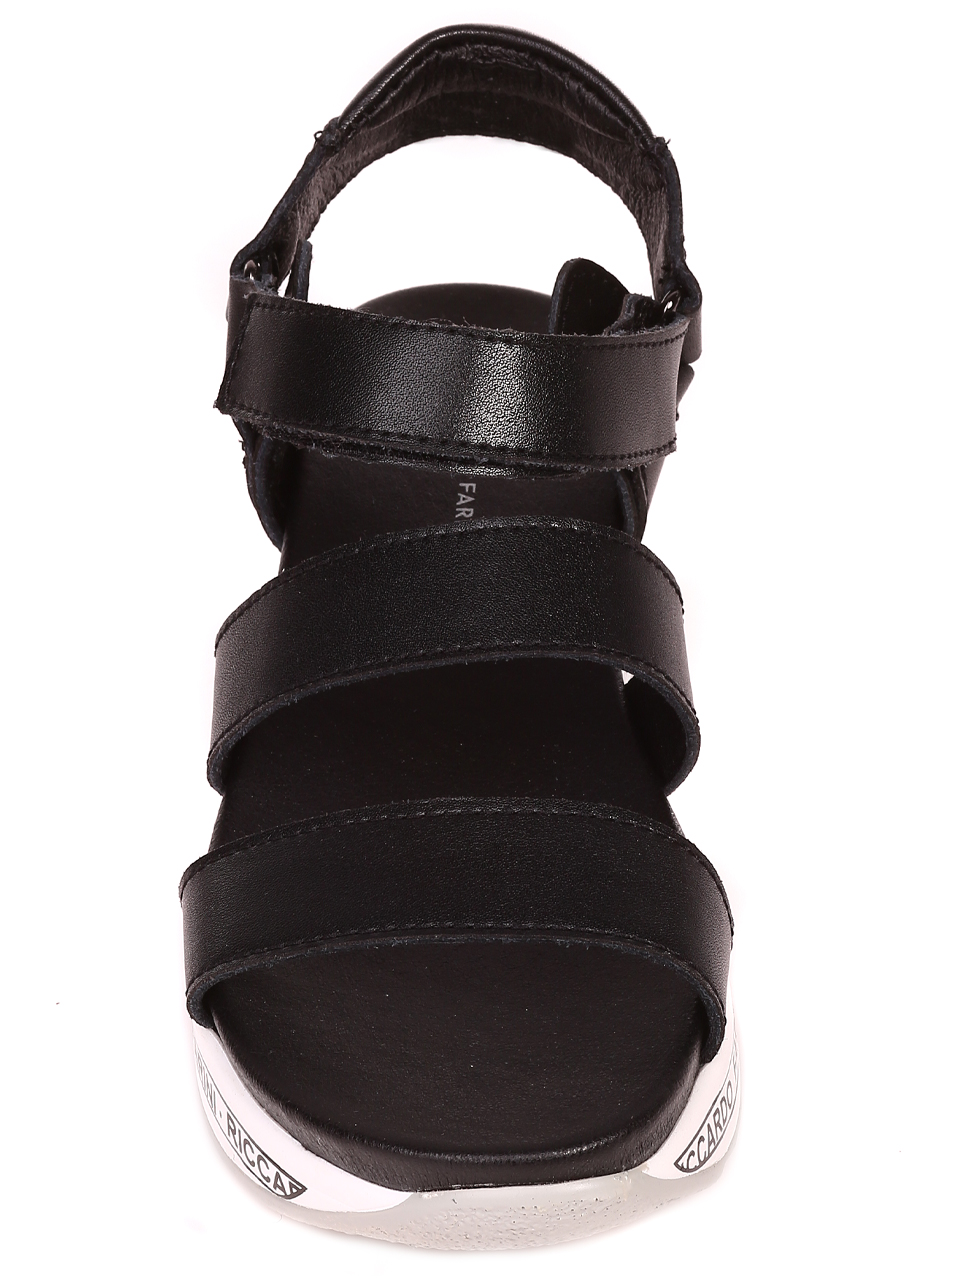 Ежедневни дамски сандали на платформа от естествена кожа 4AF-22147 black